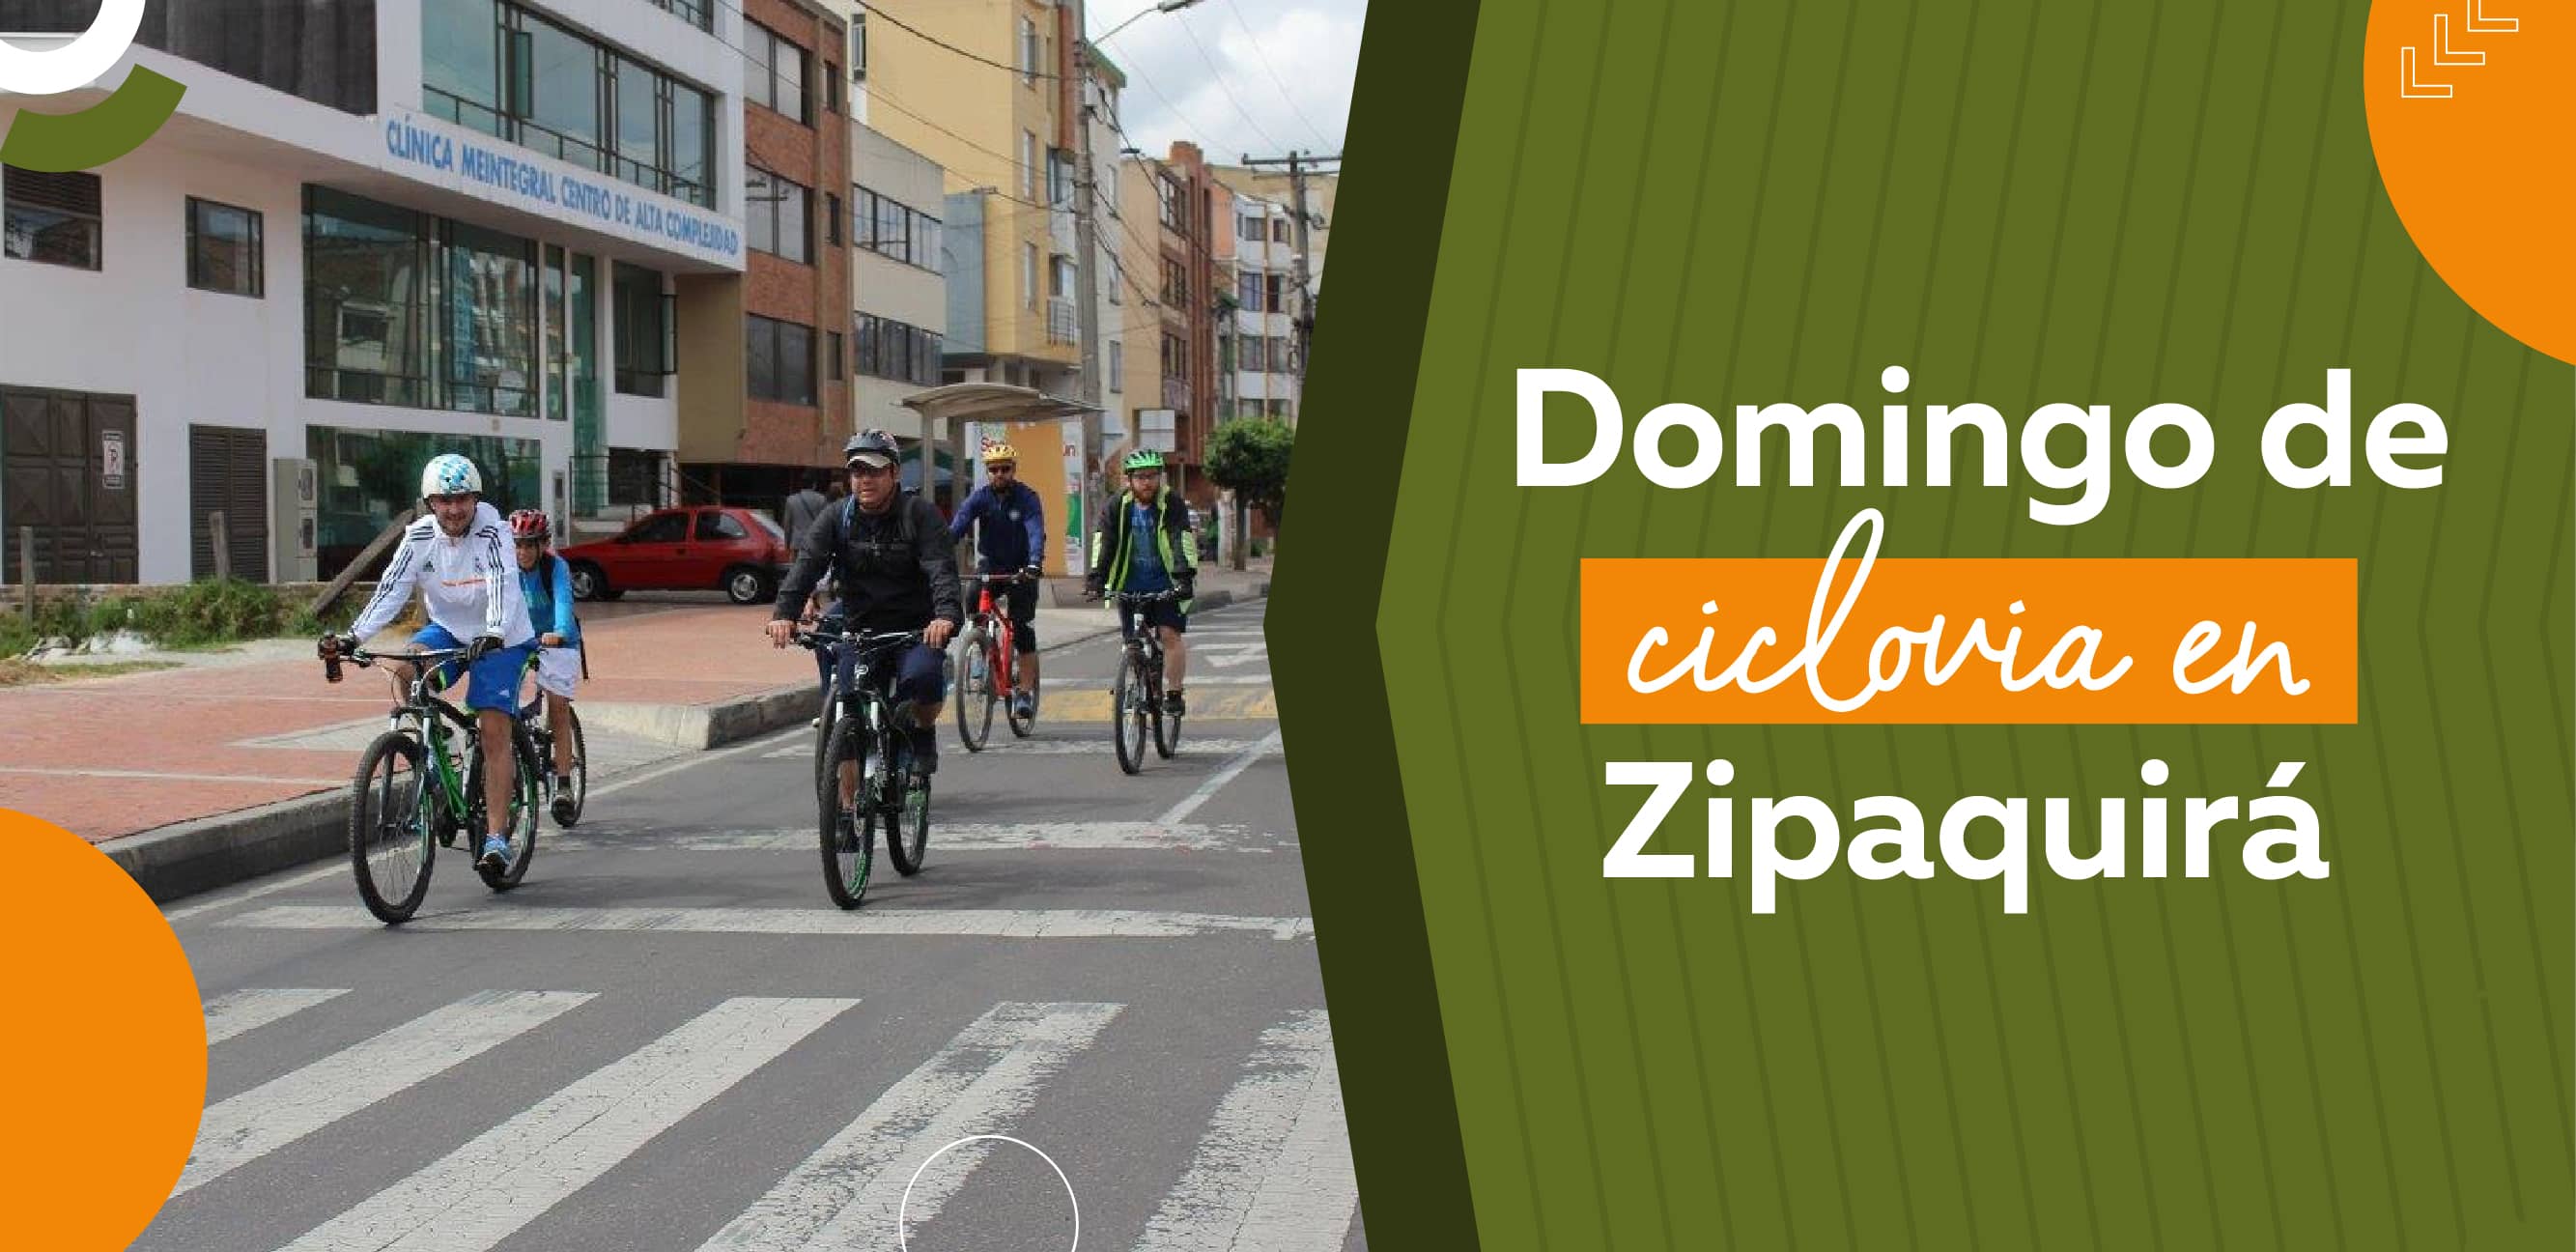 Domingo de ciclovía en Zipaquirá